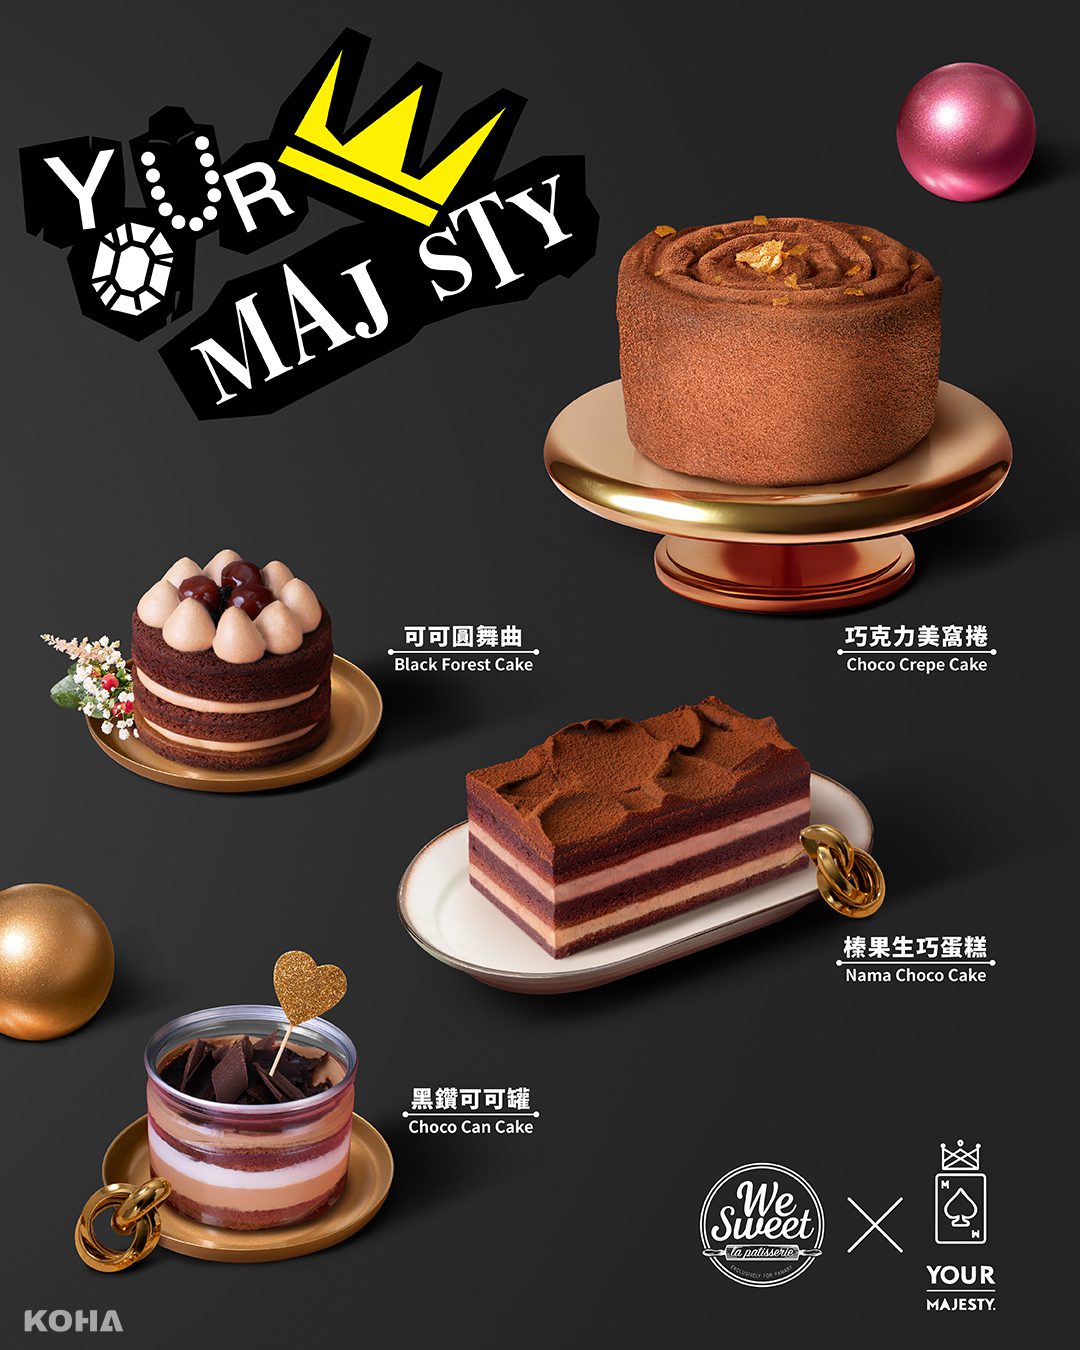 全聯We Sweet X Your Majesty皇后陛下聯名合作，每一款巧克力甜點各具特色，好吃也好拍。